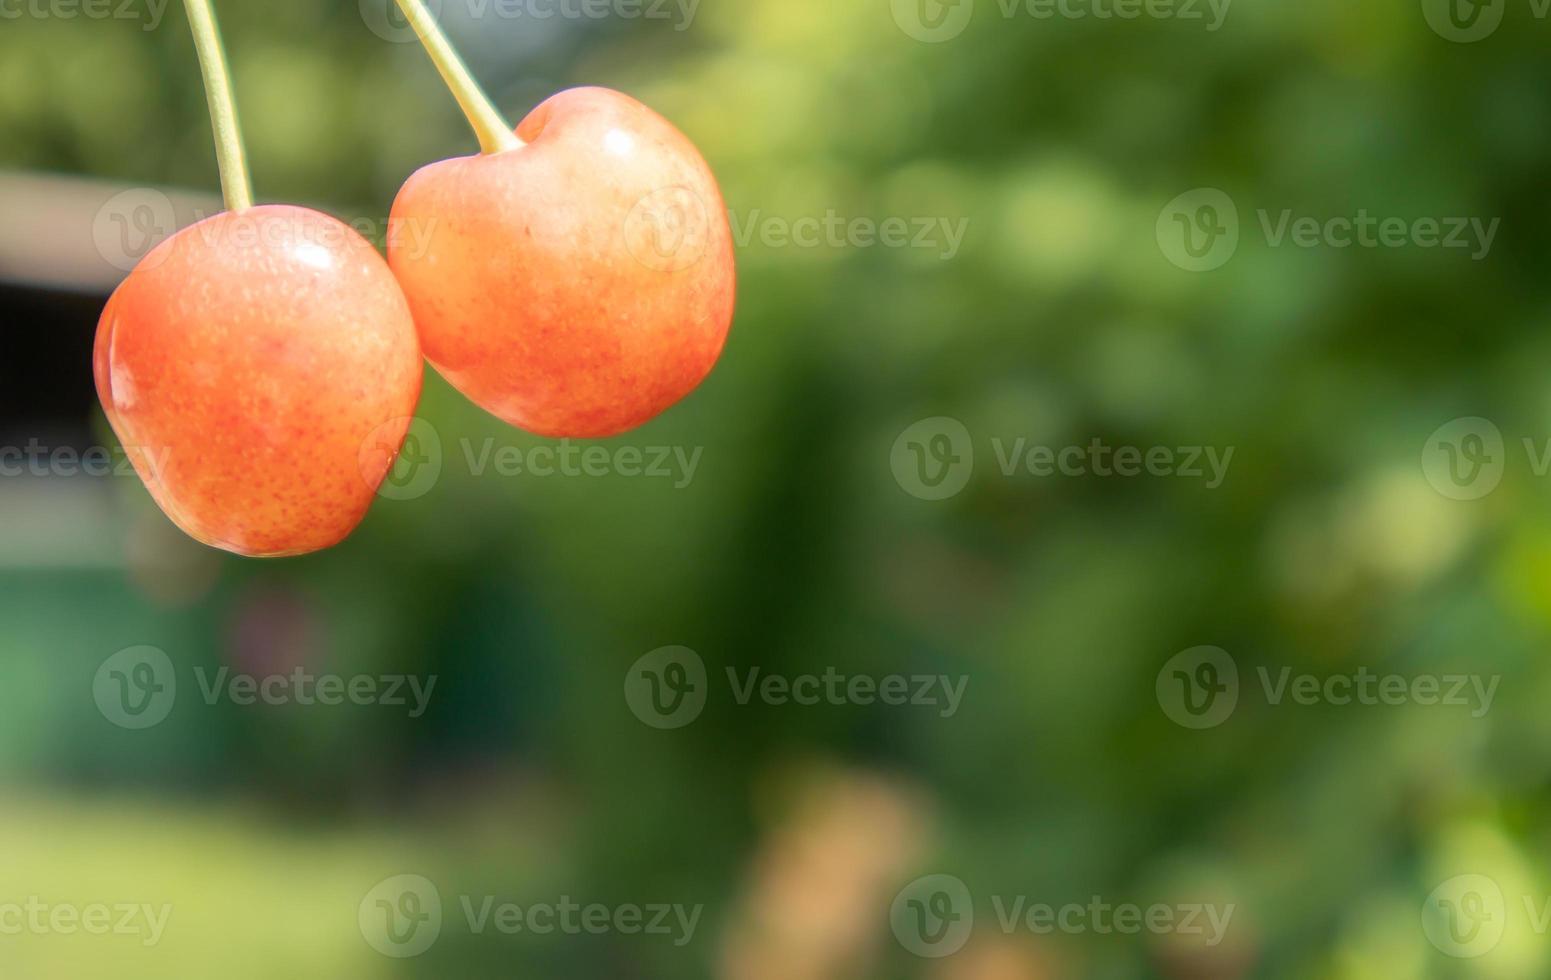 duas cerejas maduras, close-up. frutos maduros e suculentos. frutas vermelhas e bagas de verão. duas cerejas vermelhas maduras no jardim no verão com fundo borrado de folhagem. foto